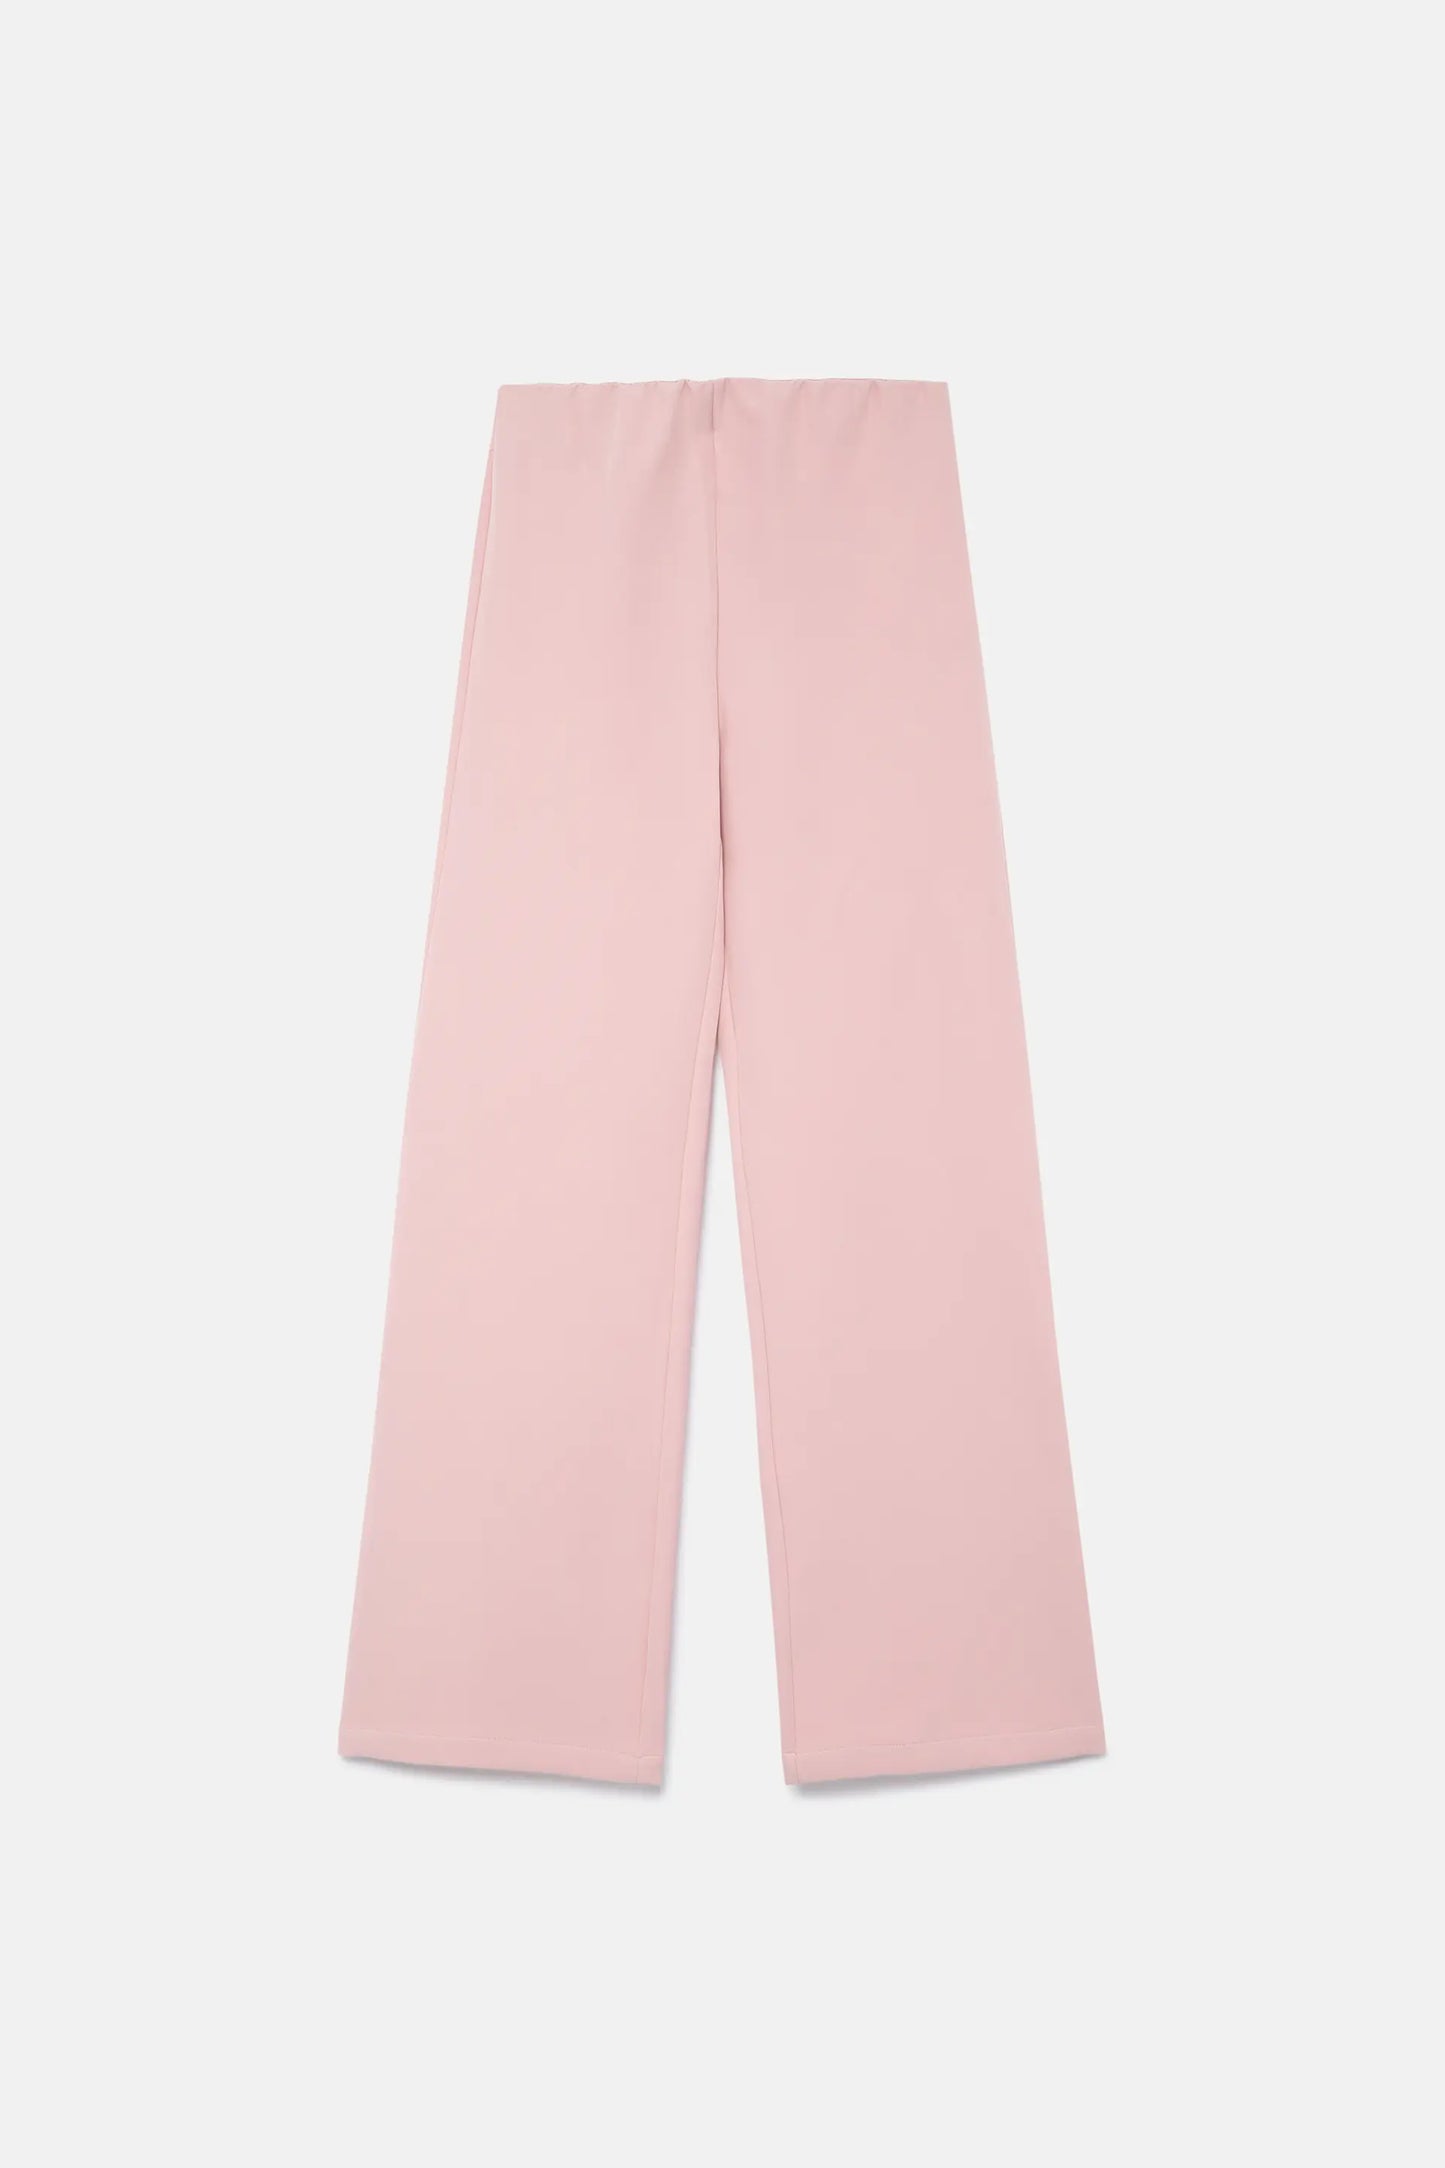 Pantalón neopreno recto rosa